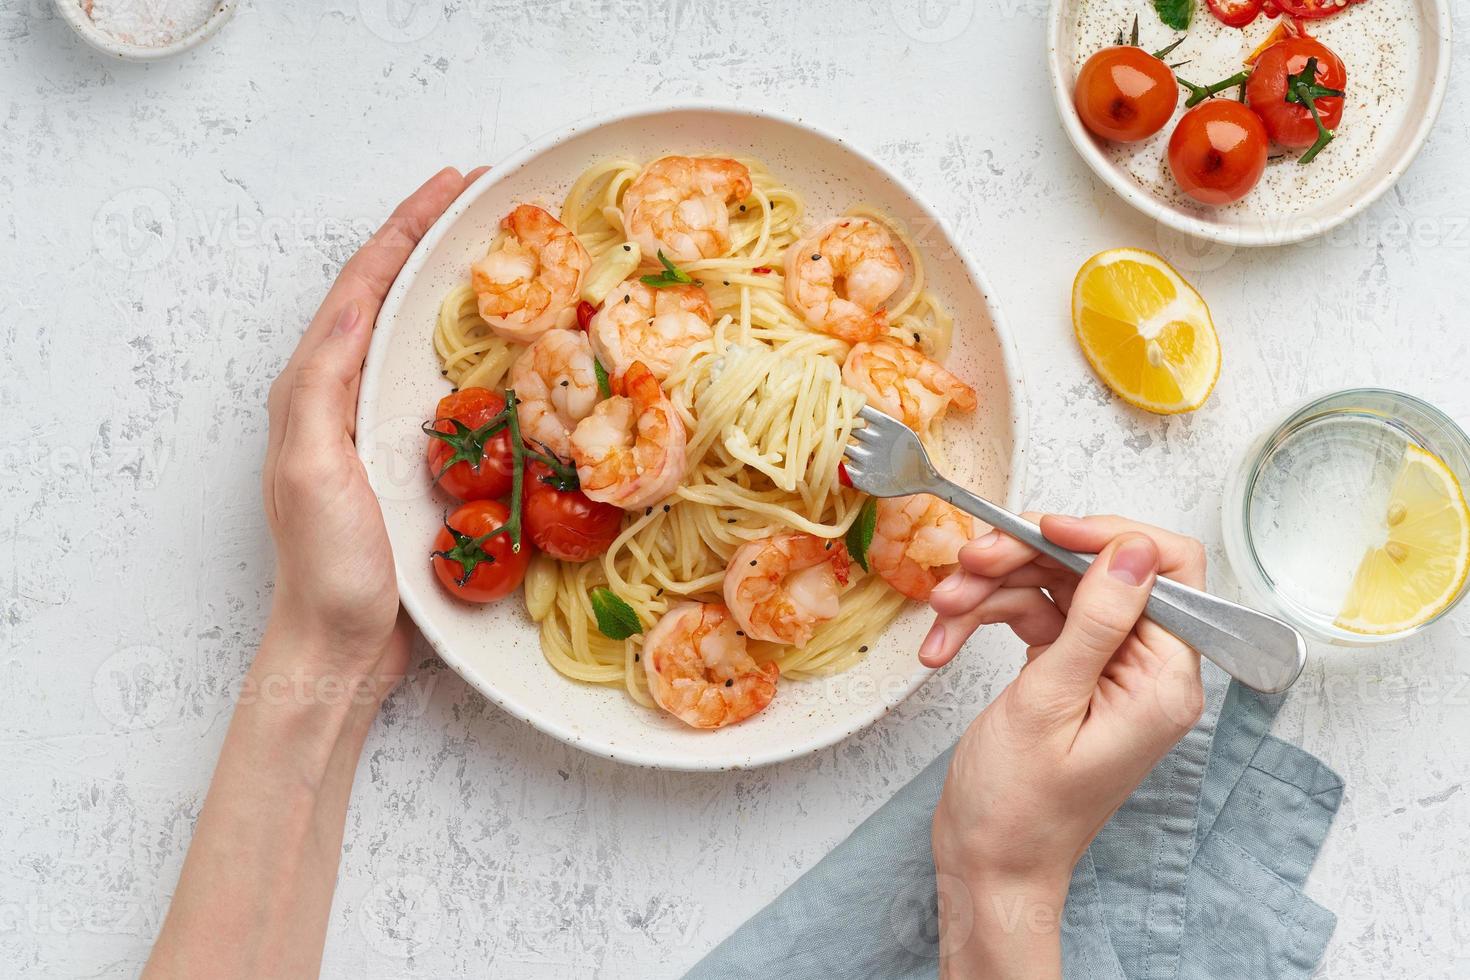 pasta bavette met gebakken garnalen, bechamelsaus. vrouw handen in frame, meisje eet pasta, bovenaanzicht foto